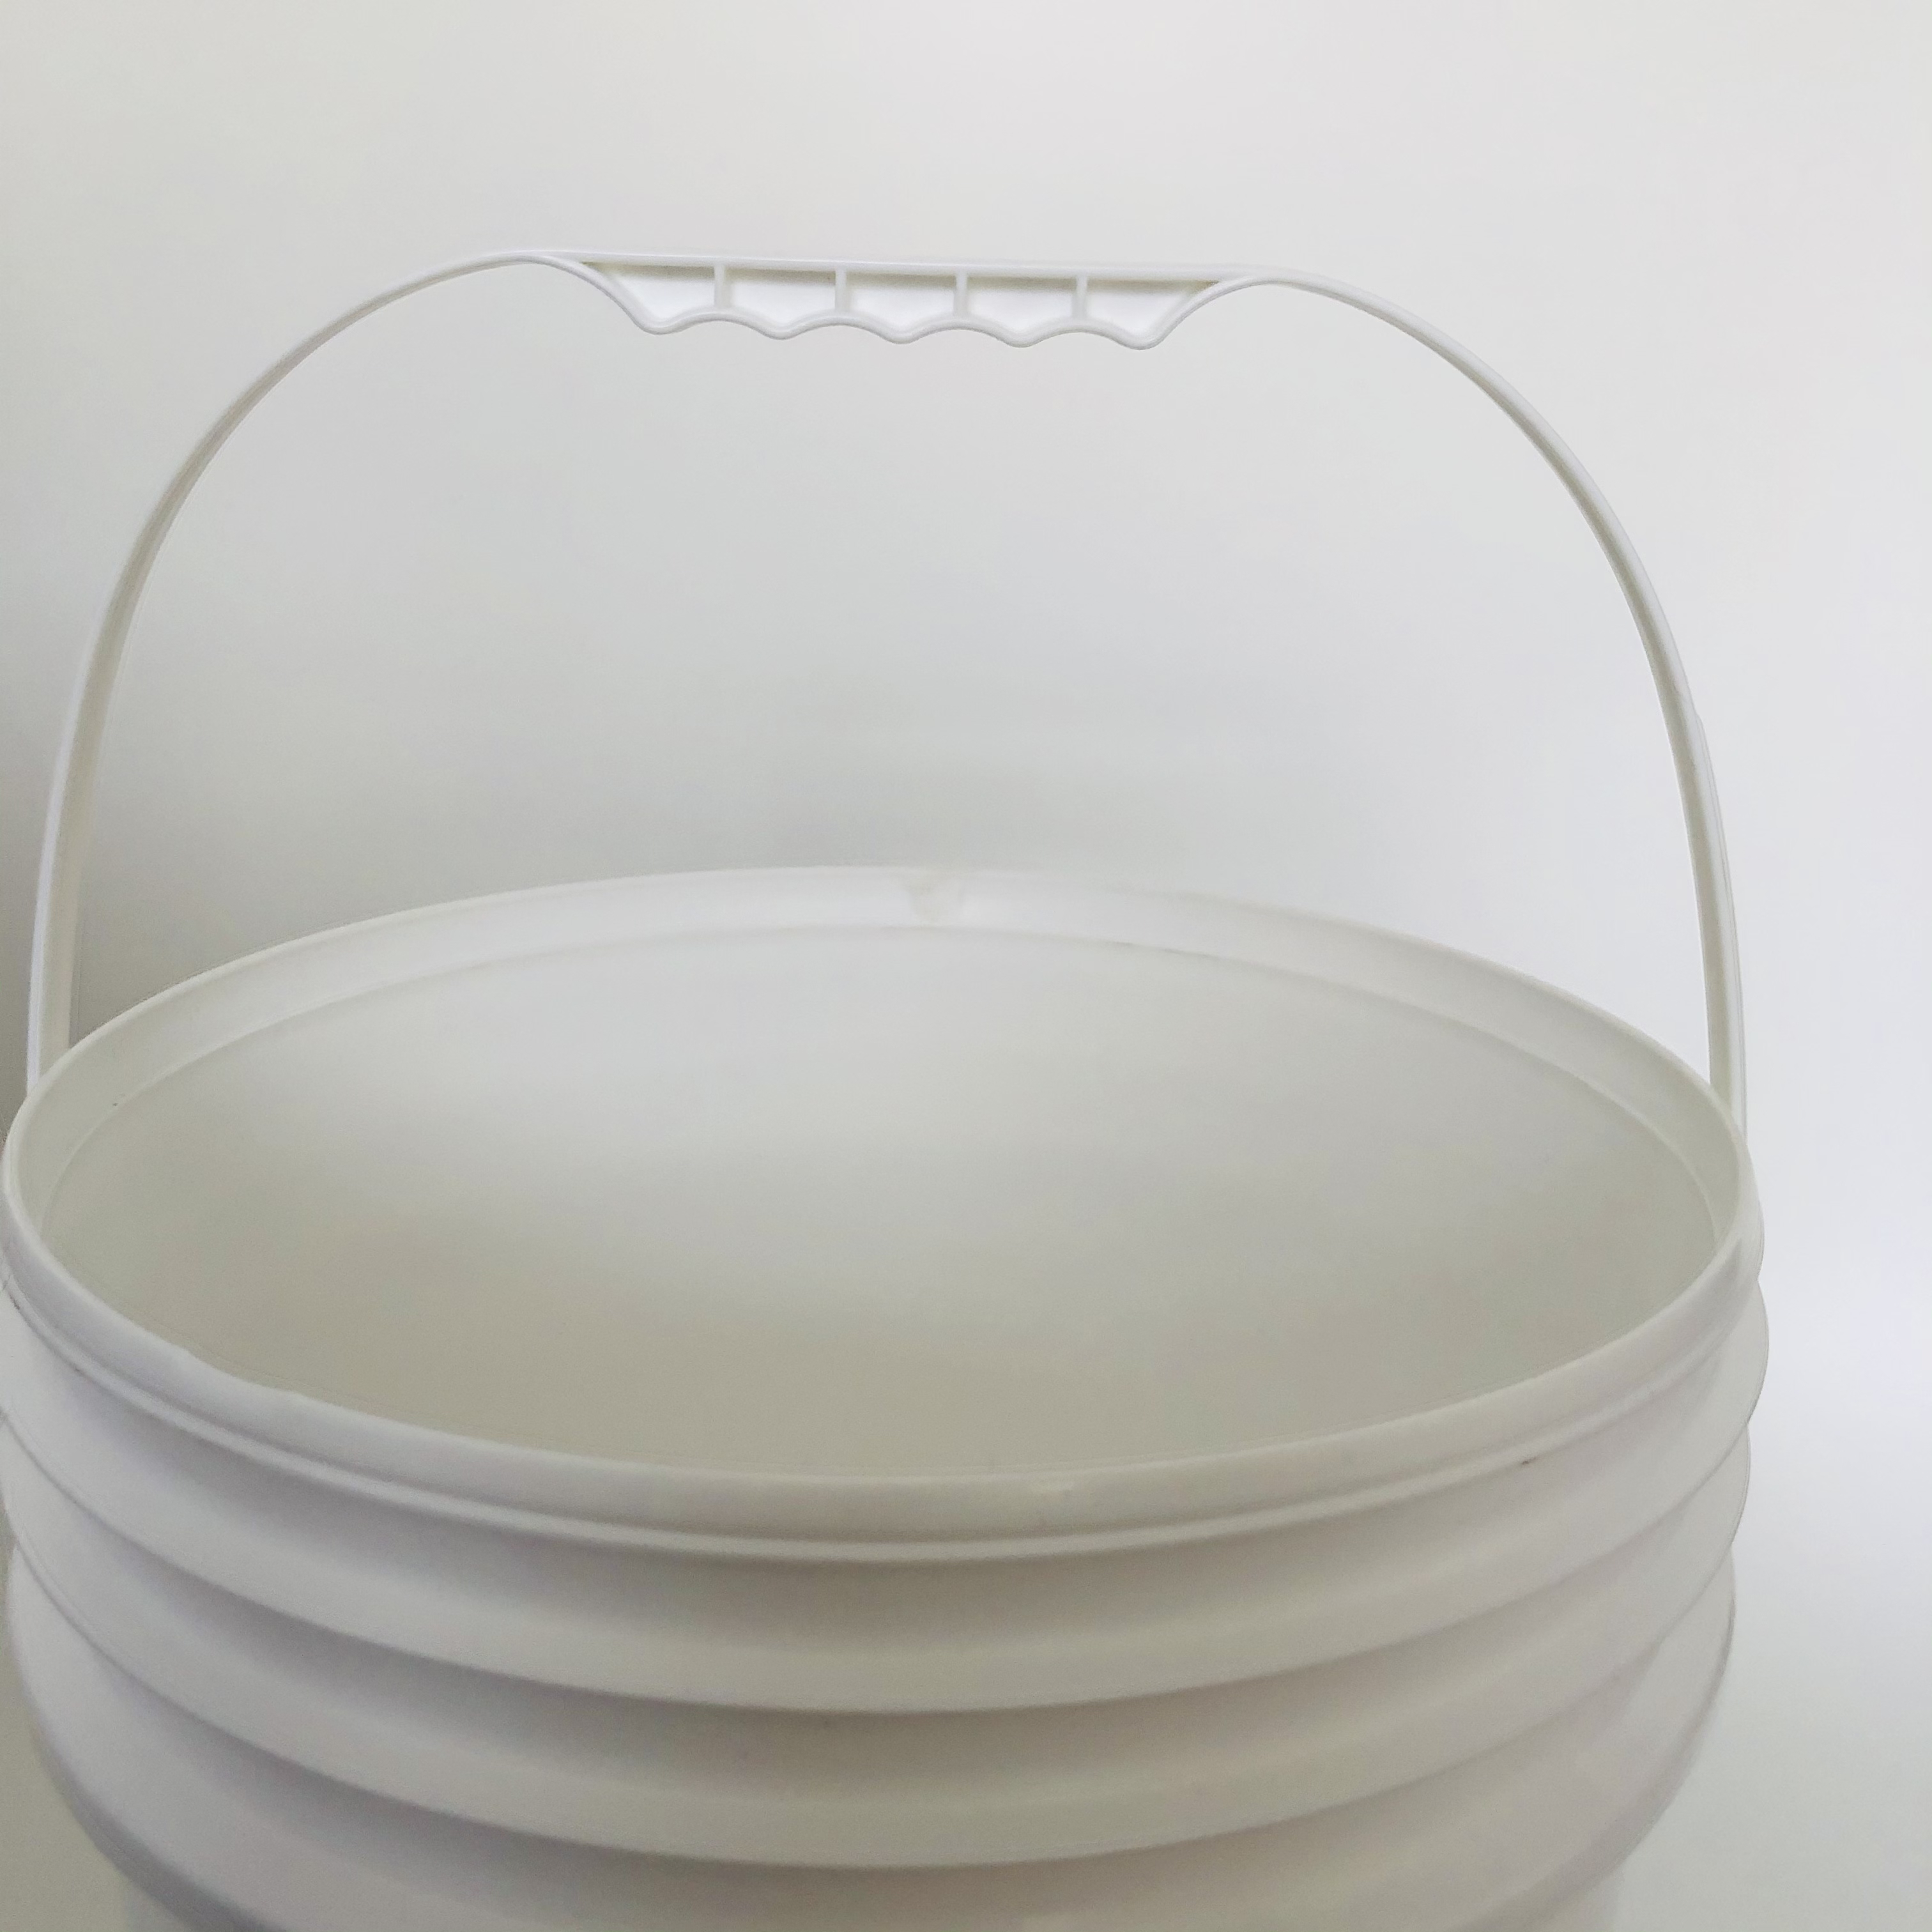 肥料桶 水桶 油漆桶 防冻液桶 邦旭塑料 技术成熟